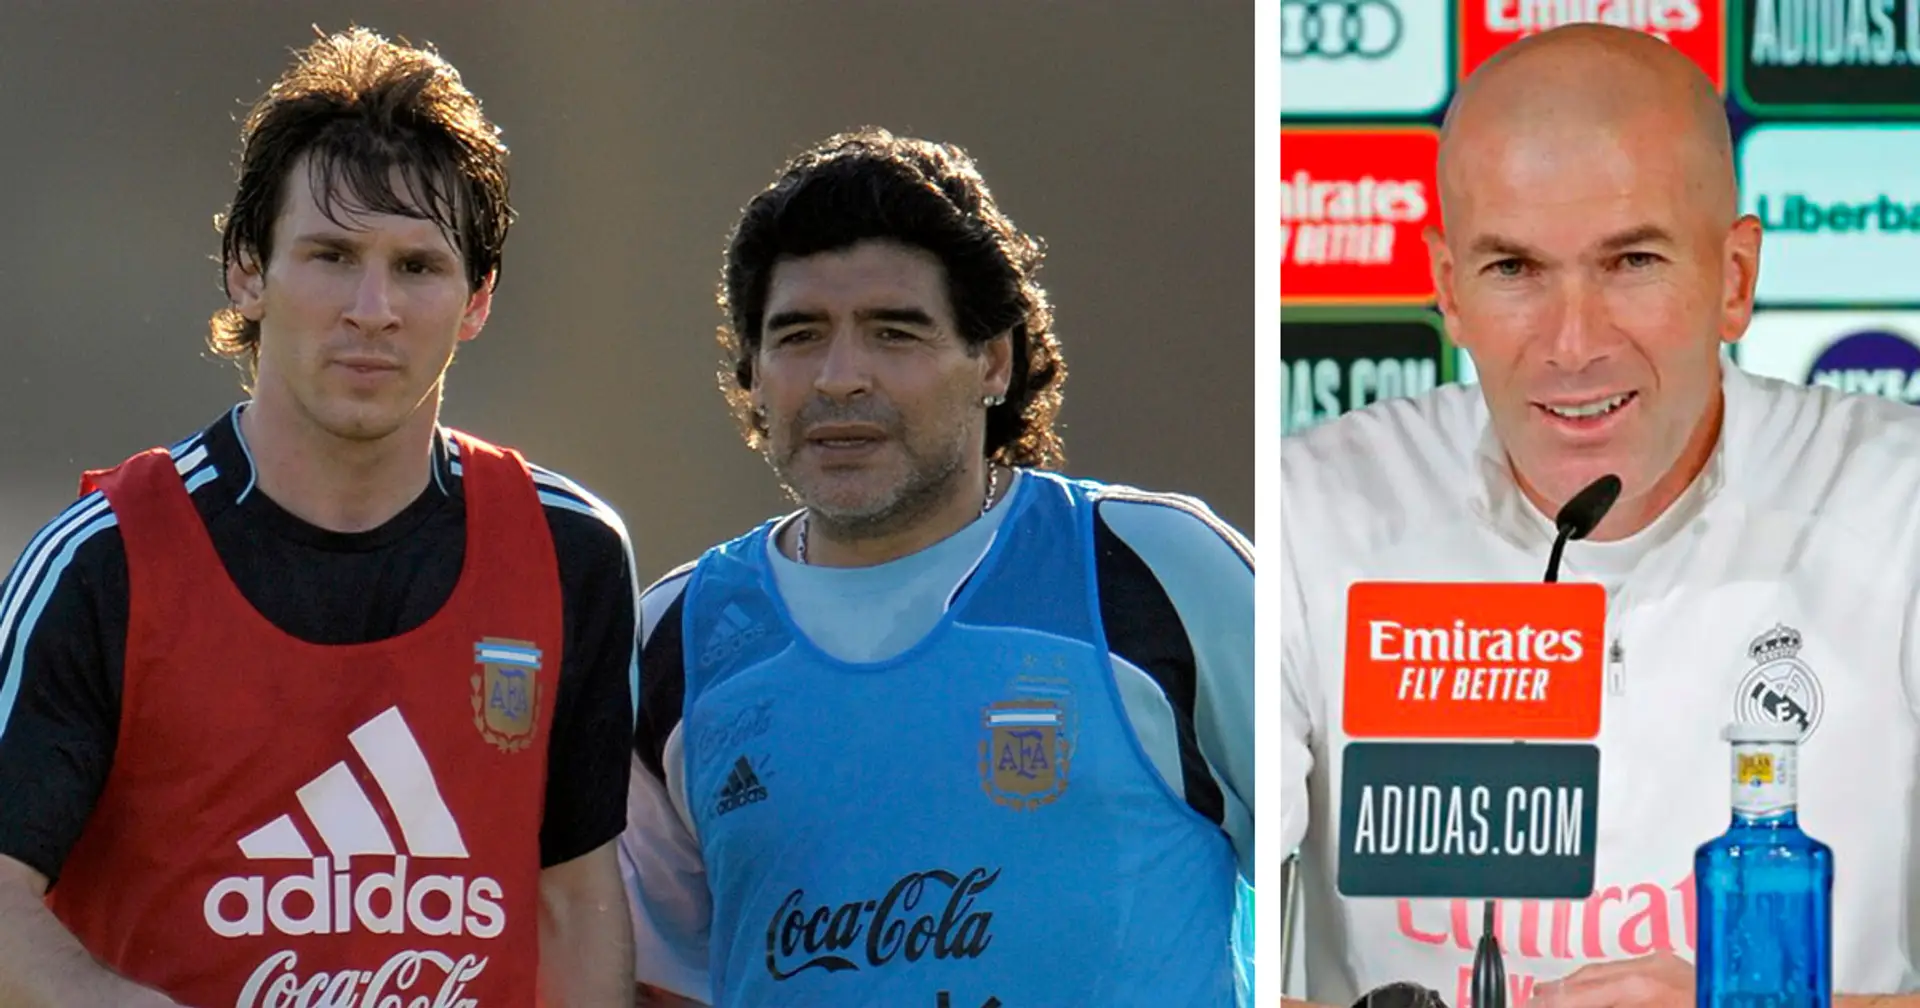 pele #maradona #zidane #xavi #Poyol #maldini #ronaldo #messi #Inesta